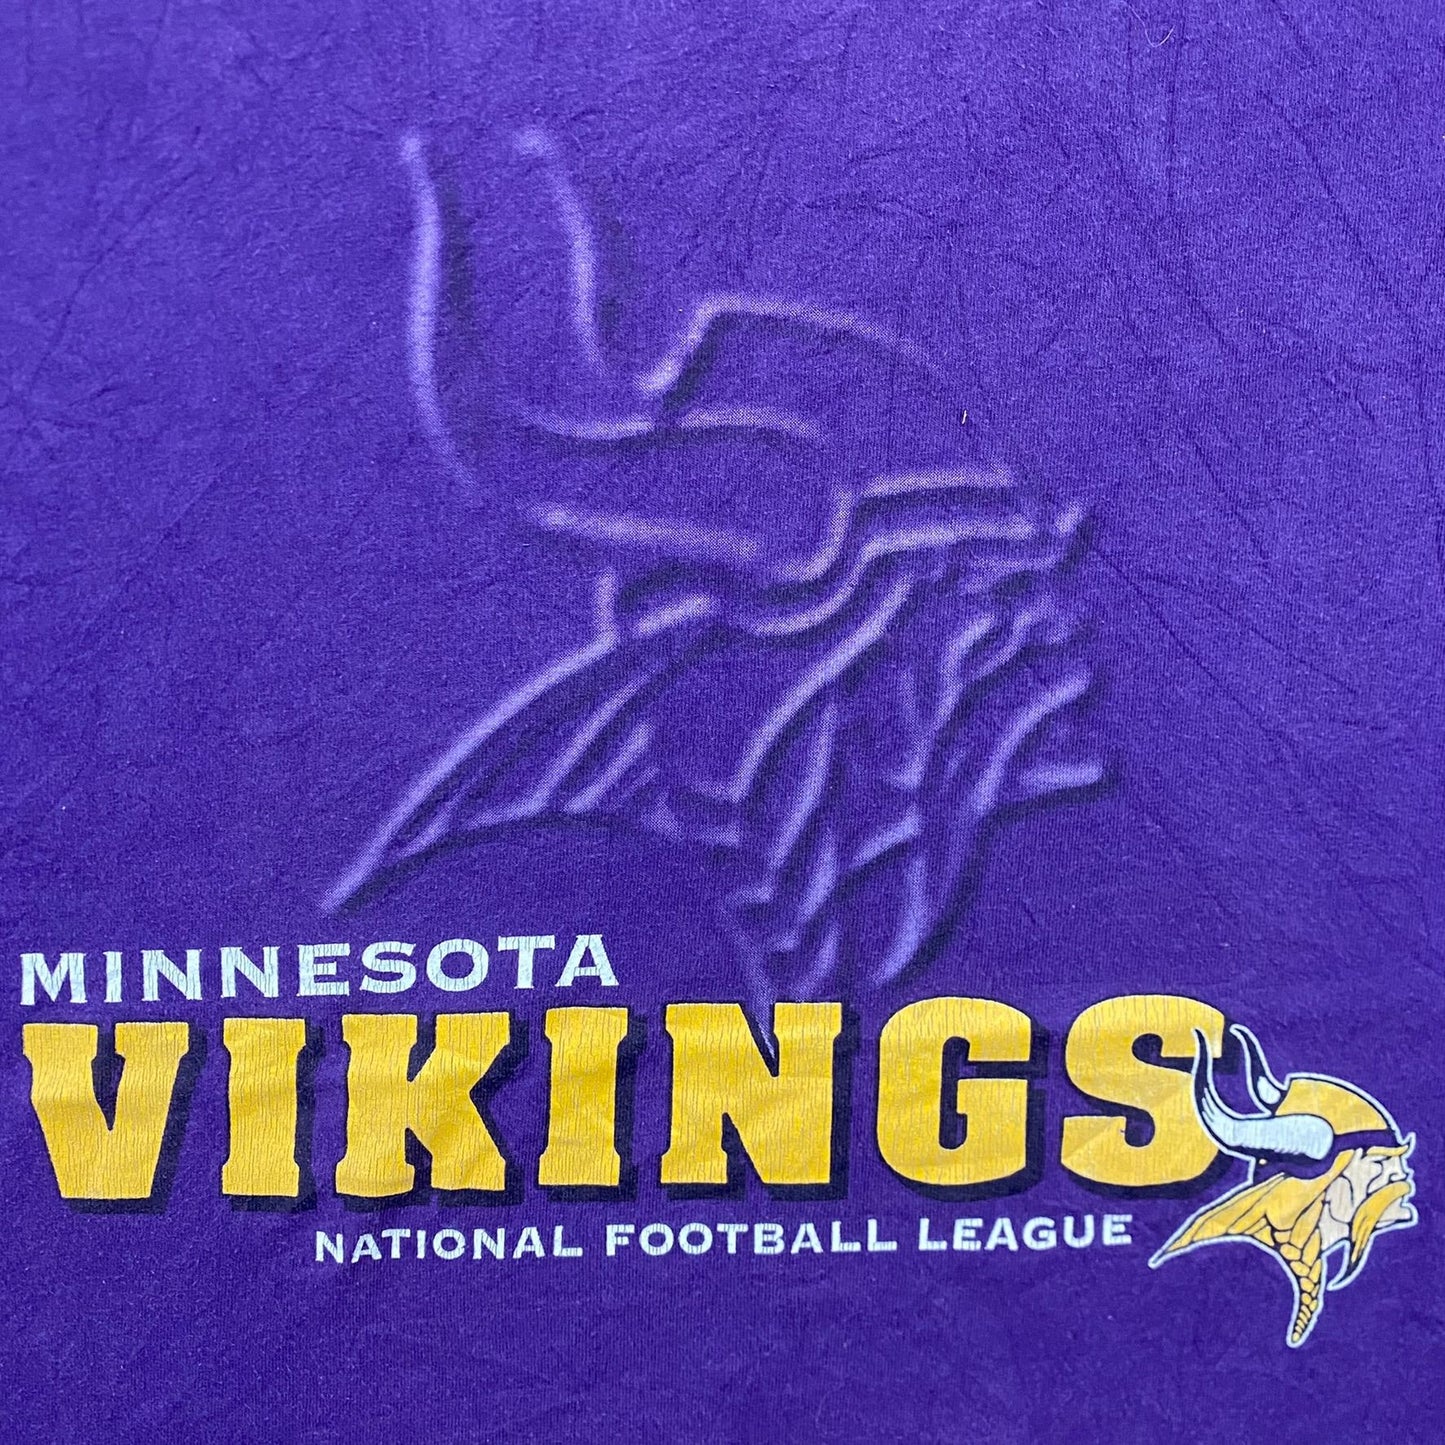 Vintage 90s Minnesota Vikings Football Essential Sports Tee